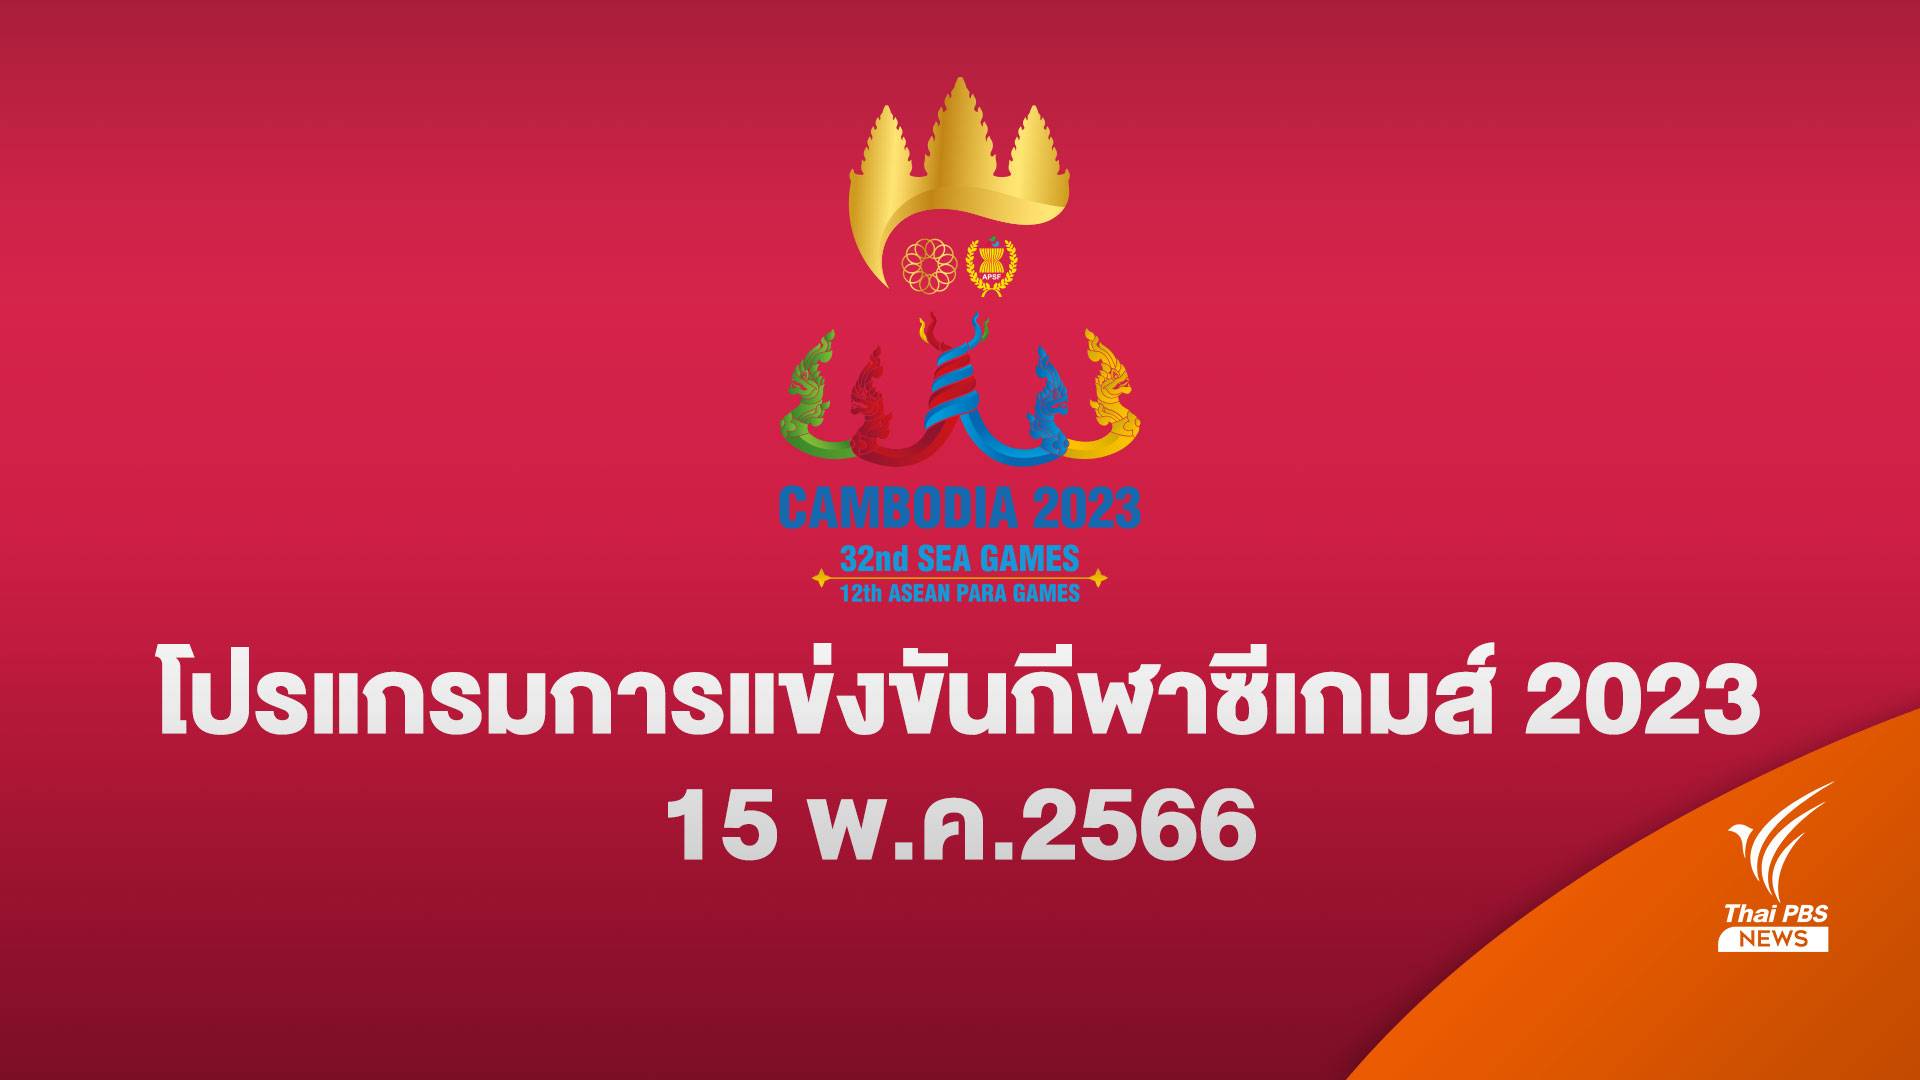 โปรแกรมแข่งขันซีเกมส์ 2023 ทัพนักกีฬาไทย 15 พ.ค. 2566 